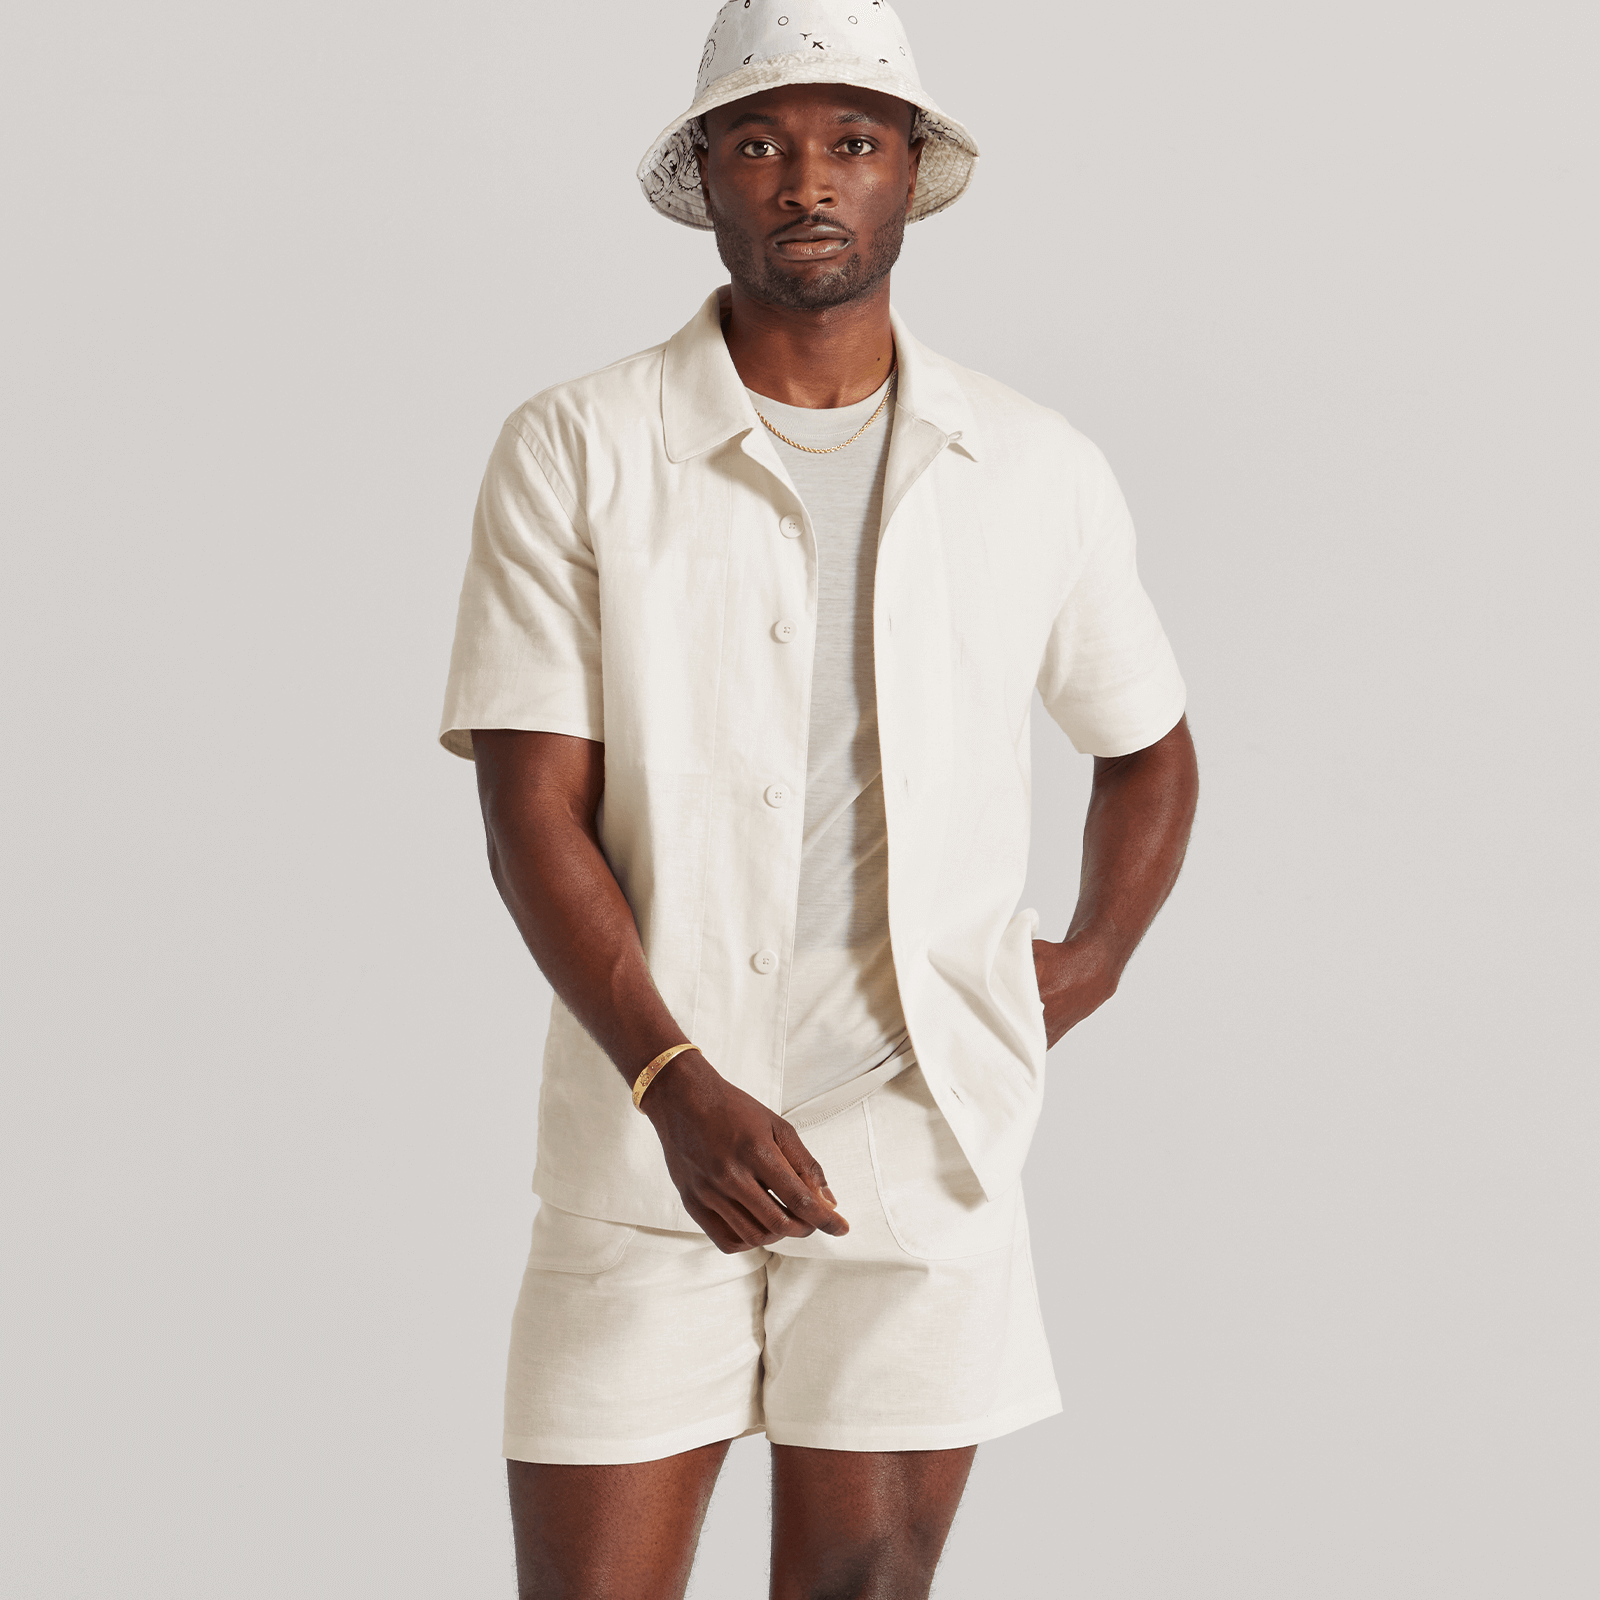 Men's Camp Shirt - Natural White